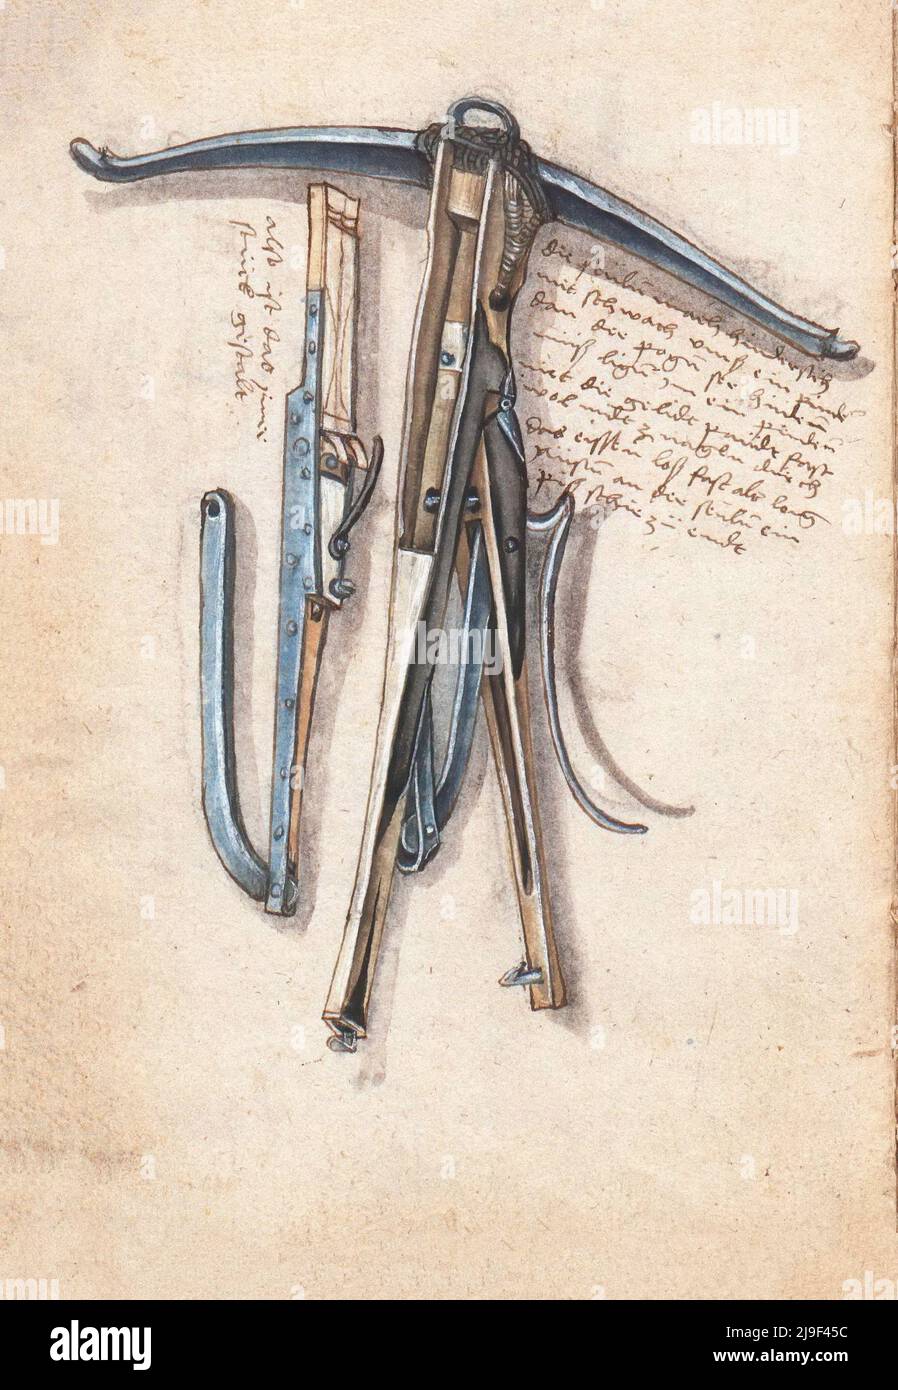 Ilustración medieval del arco cruzado. Las herramientas de Martin Löffelholz (1505) Löffelholtz Codex. Ilustraciones y descripciones de todo tipo de herramientas manuales, Foto de stock